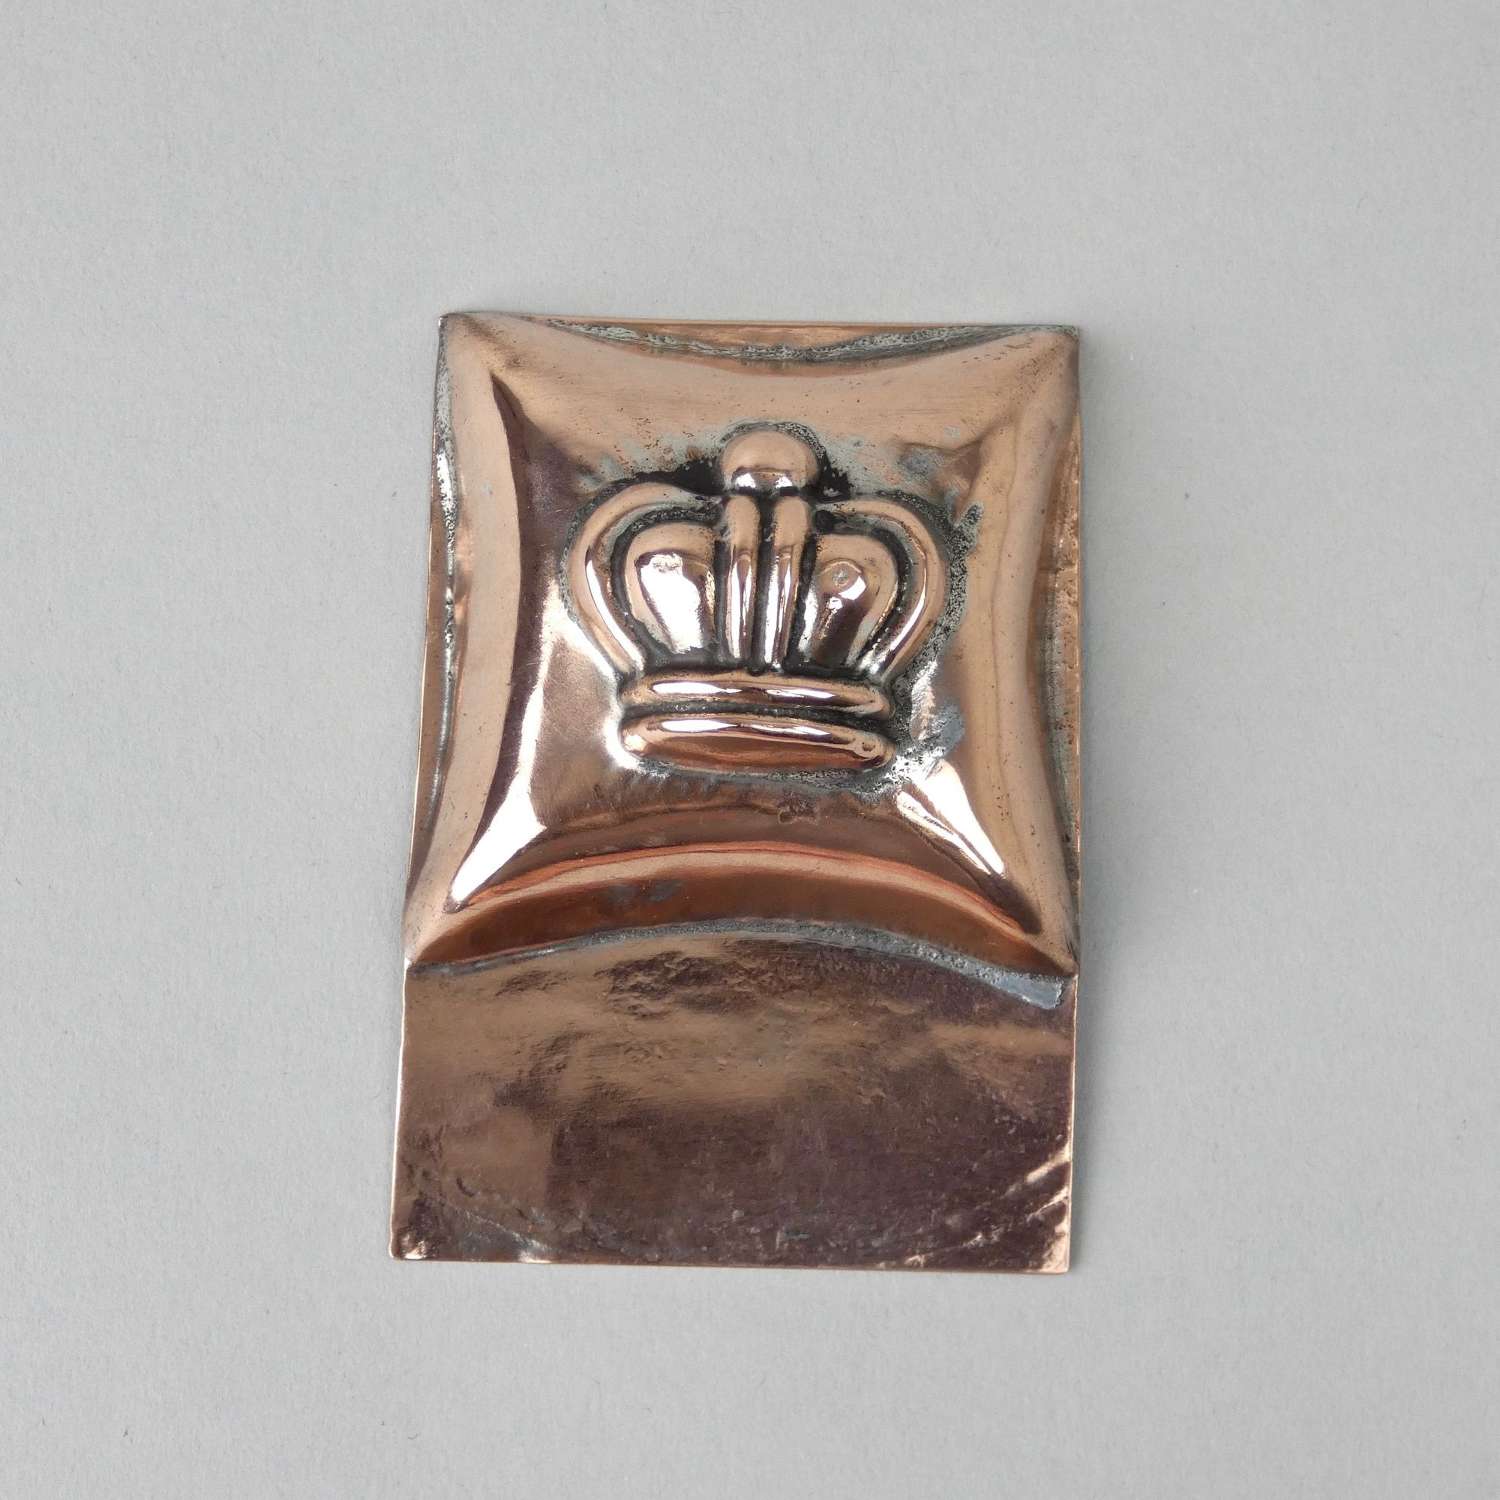 Miniature crown mould